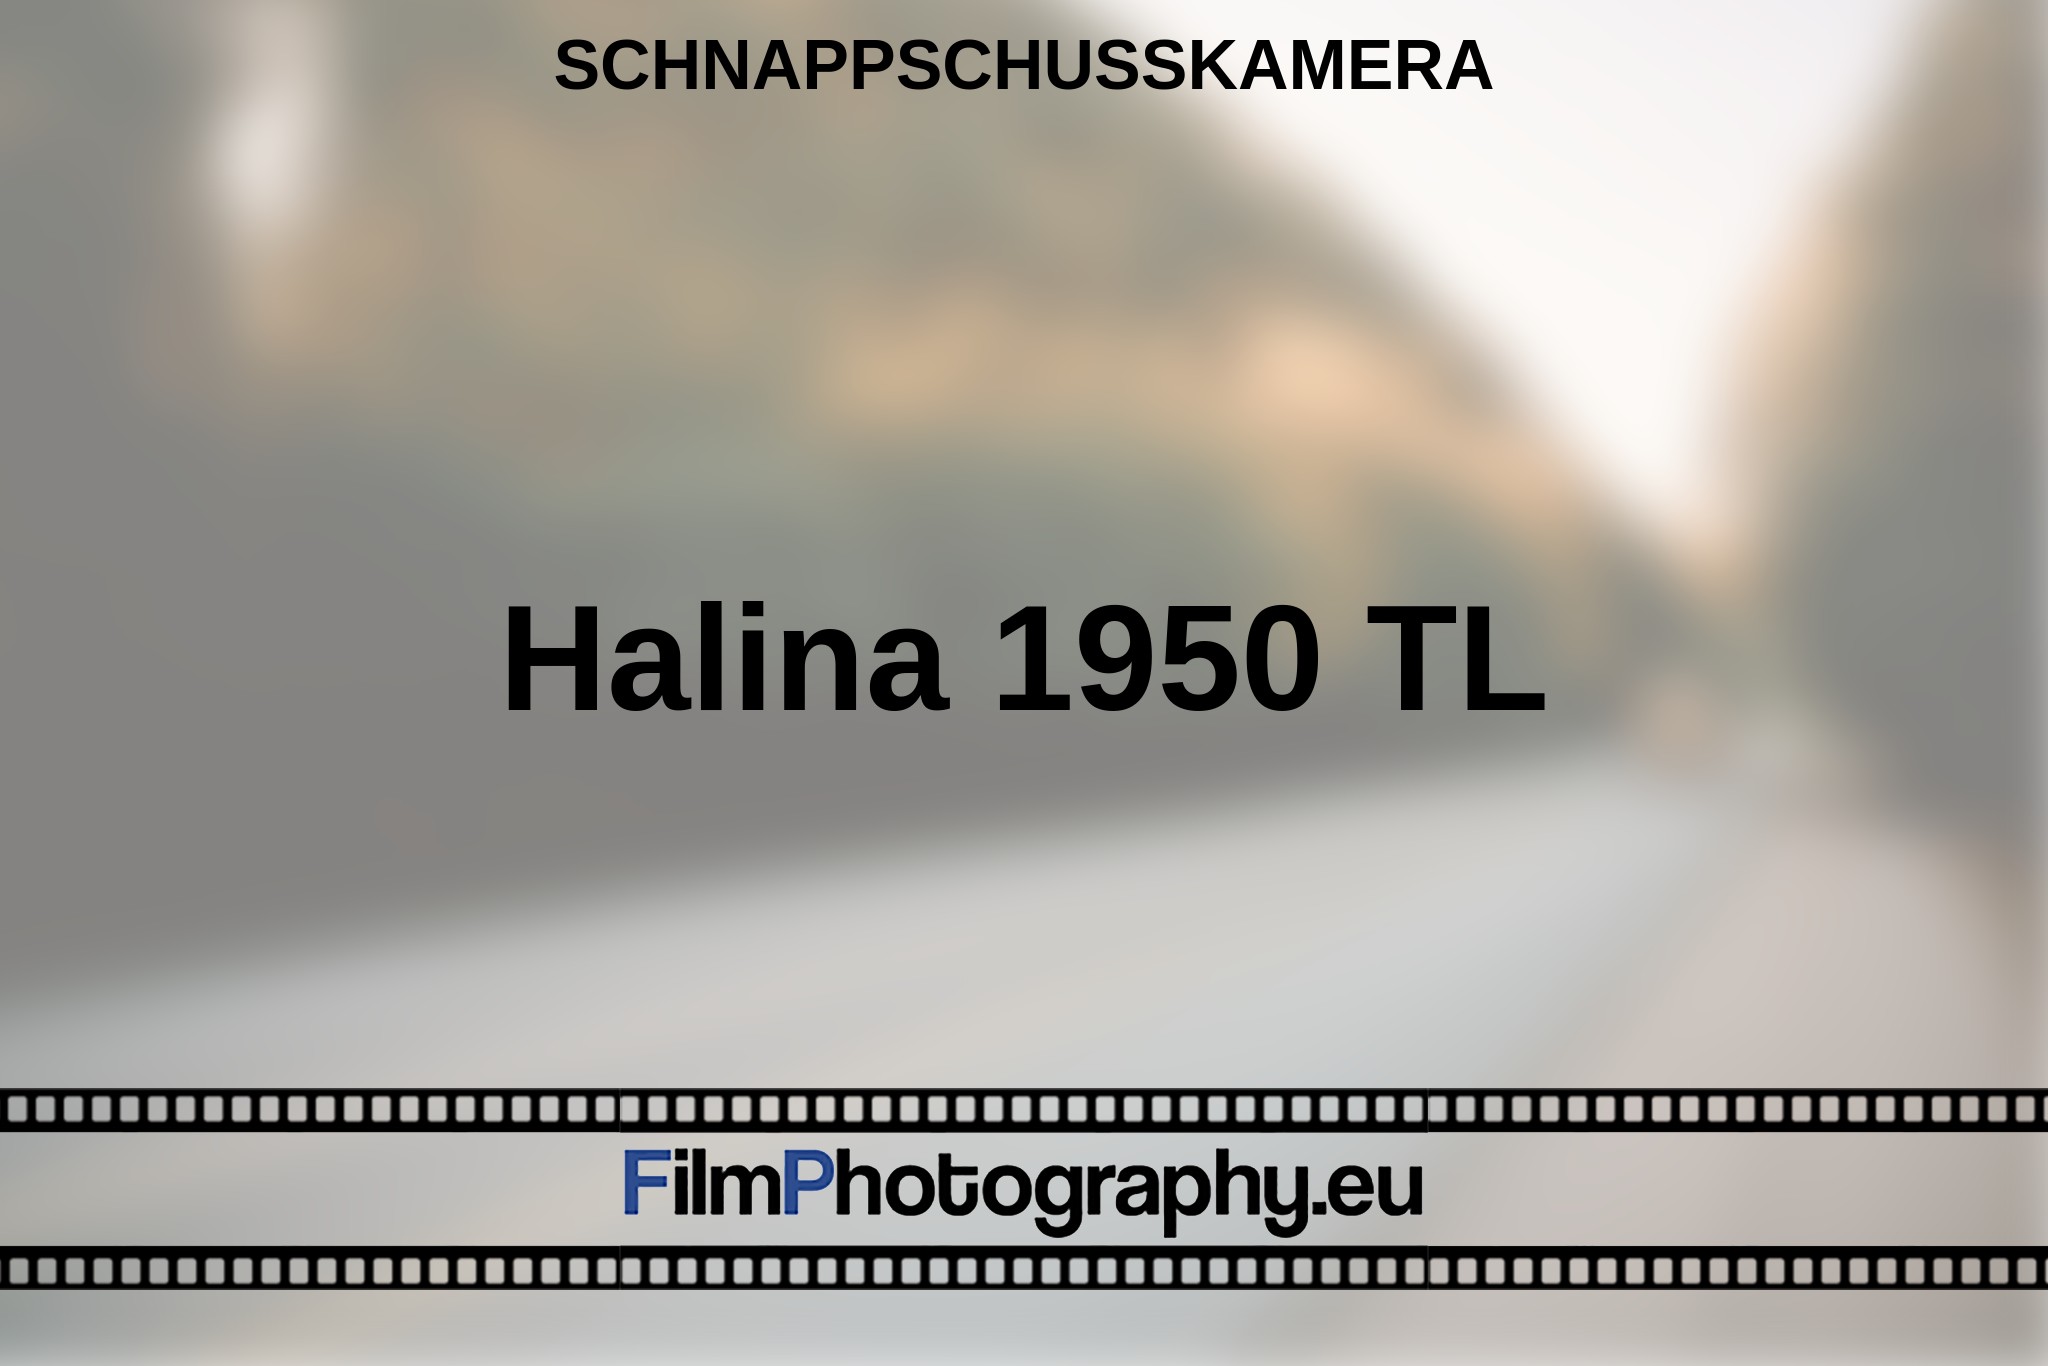 halina-1950-tl-schnappschusskamera-bnv.jpg